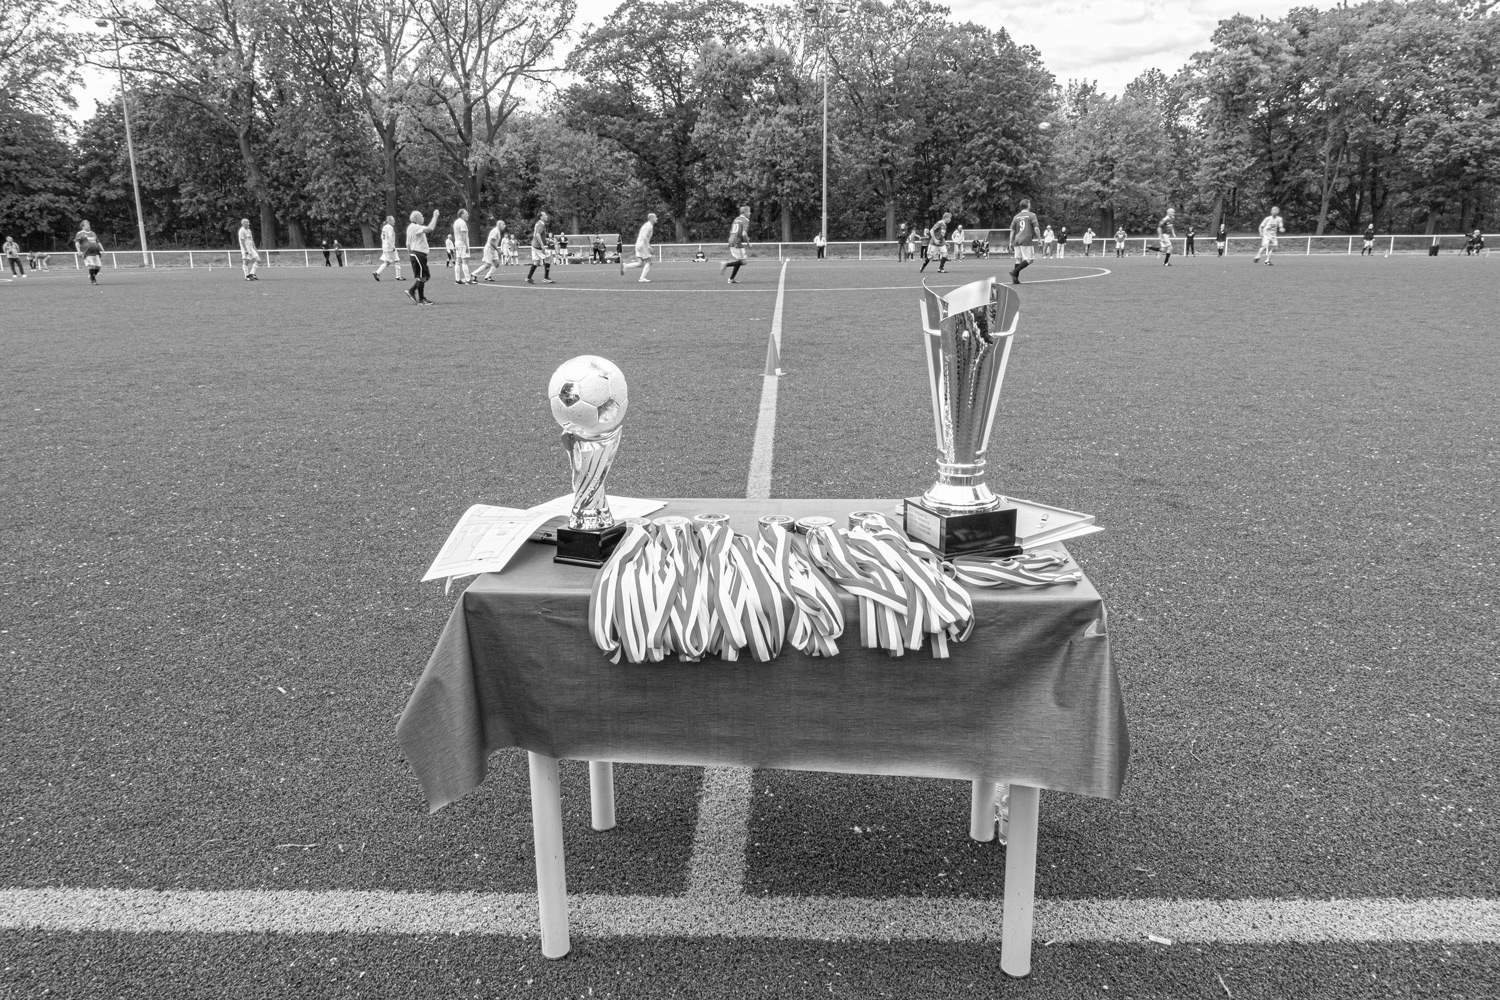 Pokal und Medaillen des defendo Pokal 2023 auf dem Tisch neben dem Fußballplatz in Berlin Lichterfelde